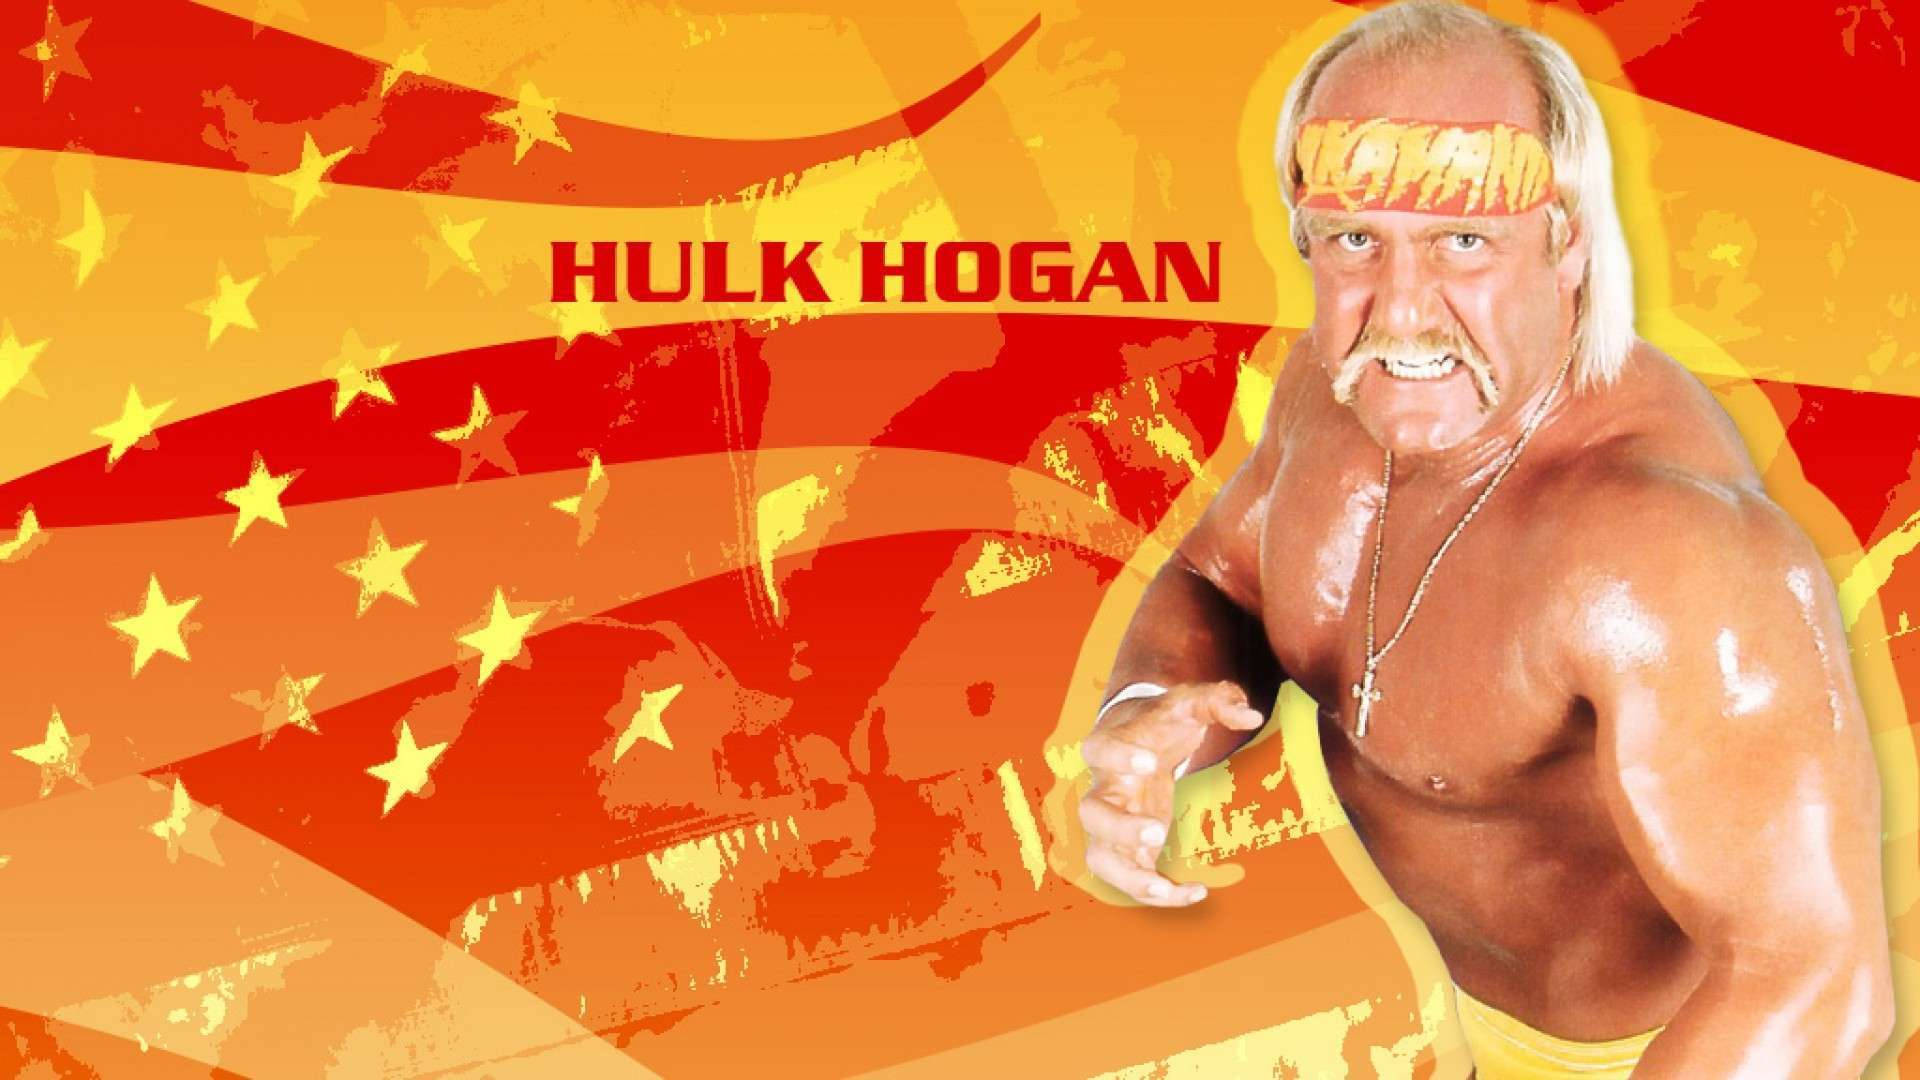 Hulk Hogan With Yellow Stars Background